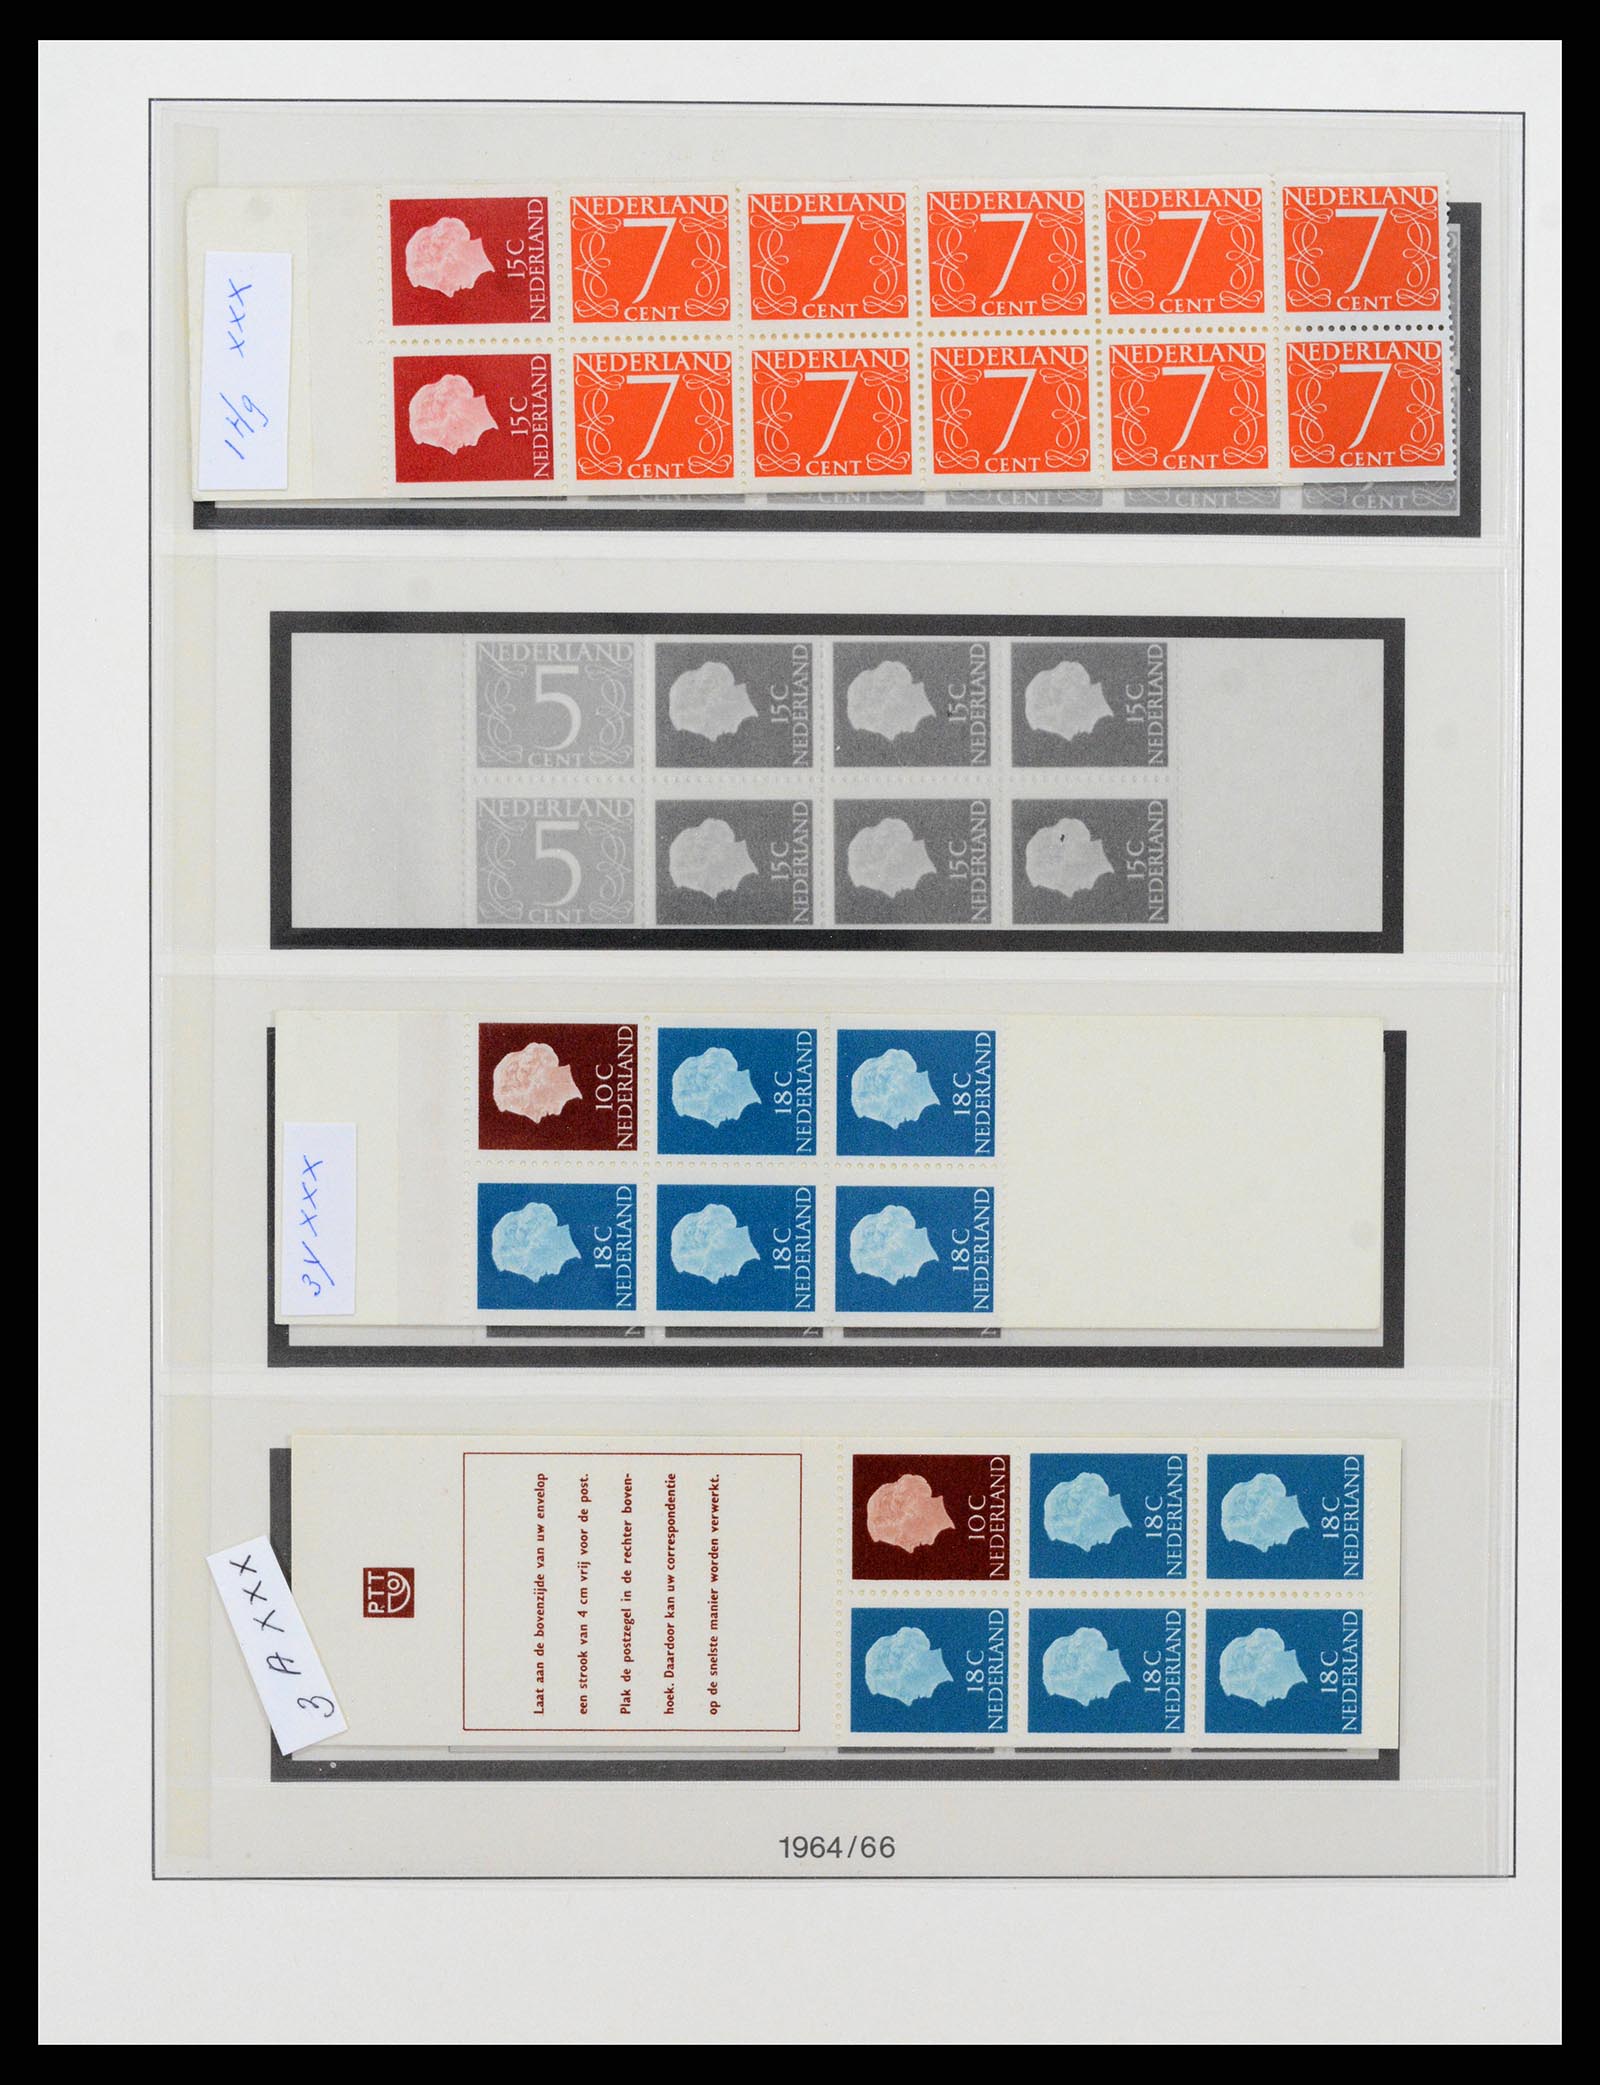 37994 001 - Stamp Collection 37994 Netherlands stampbooklets 1964-2002.